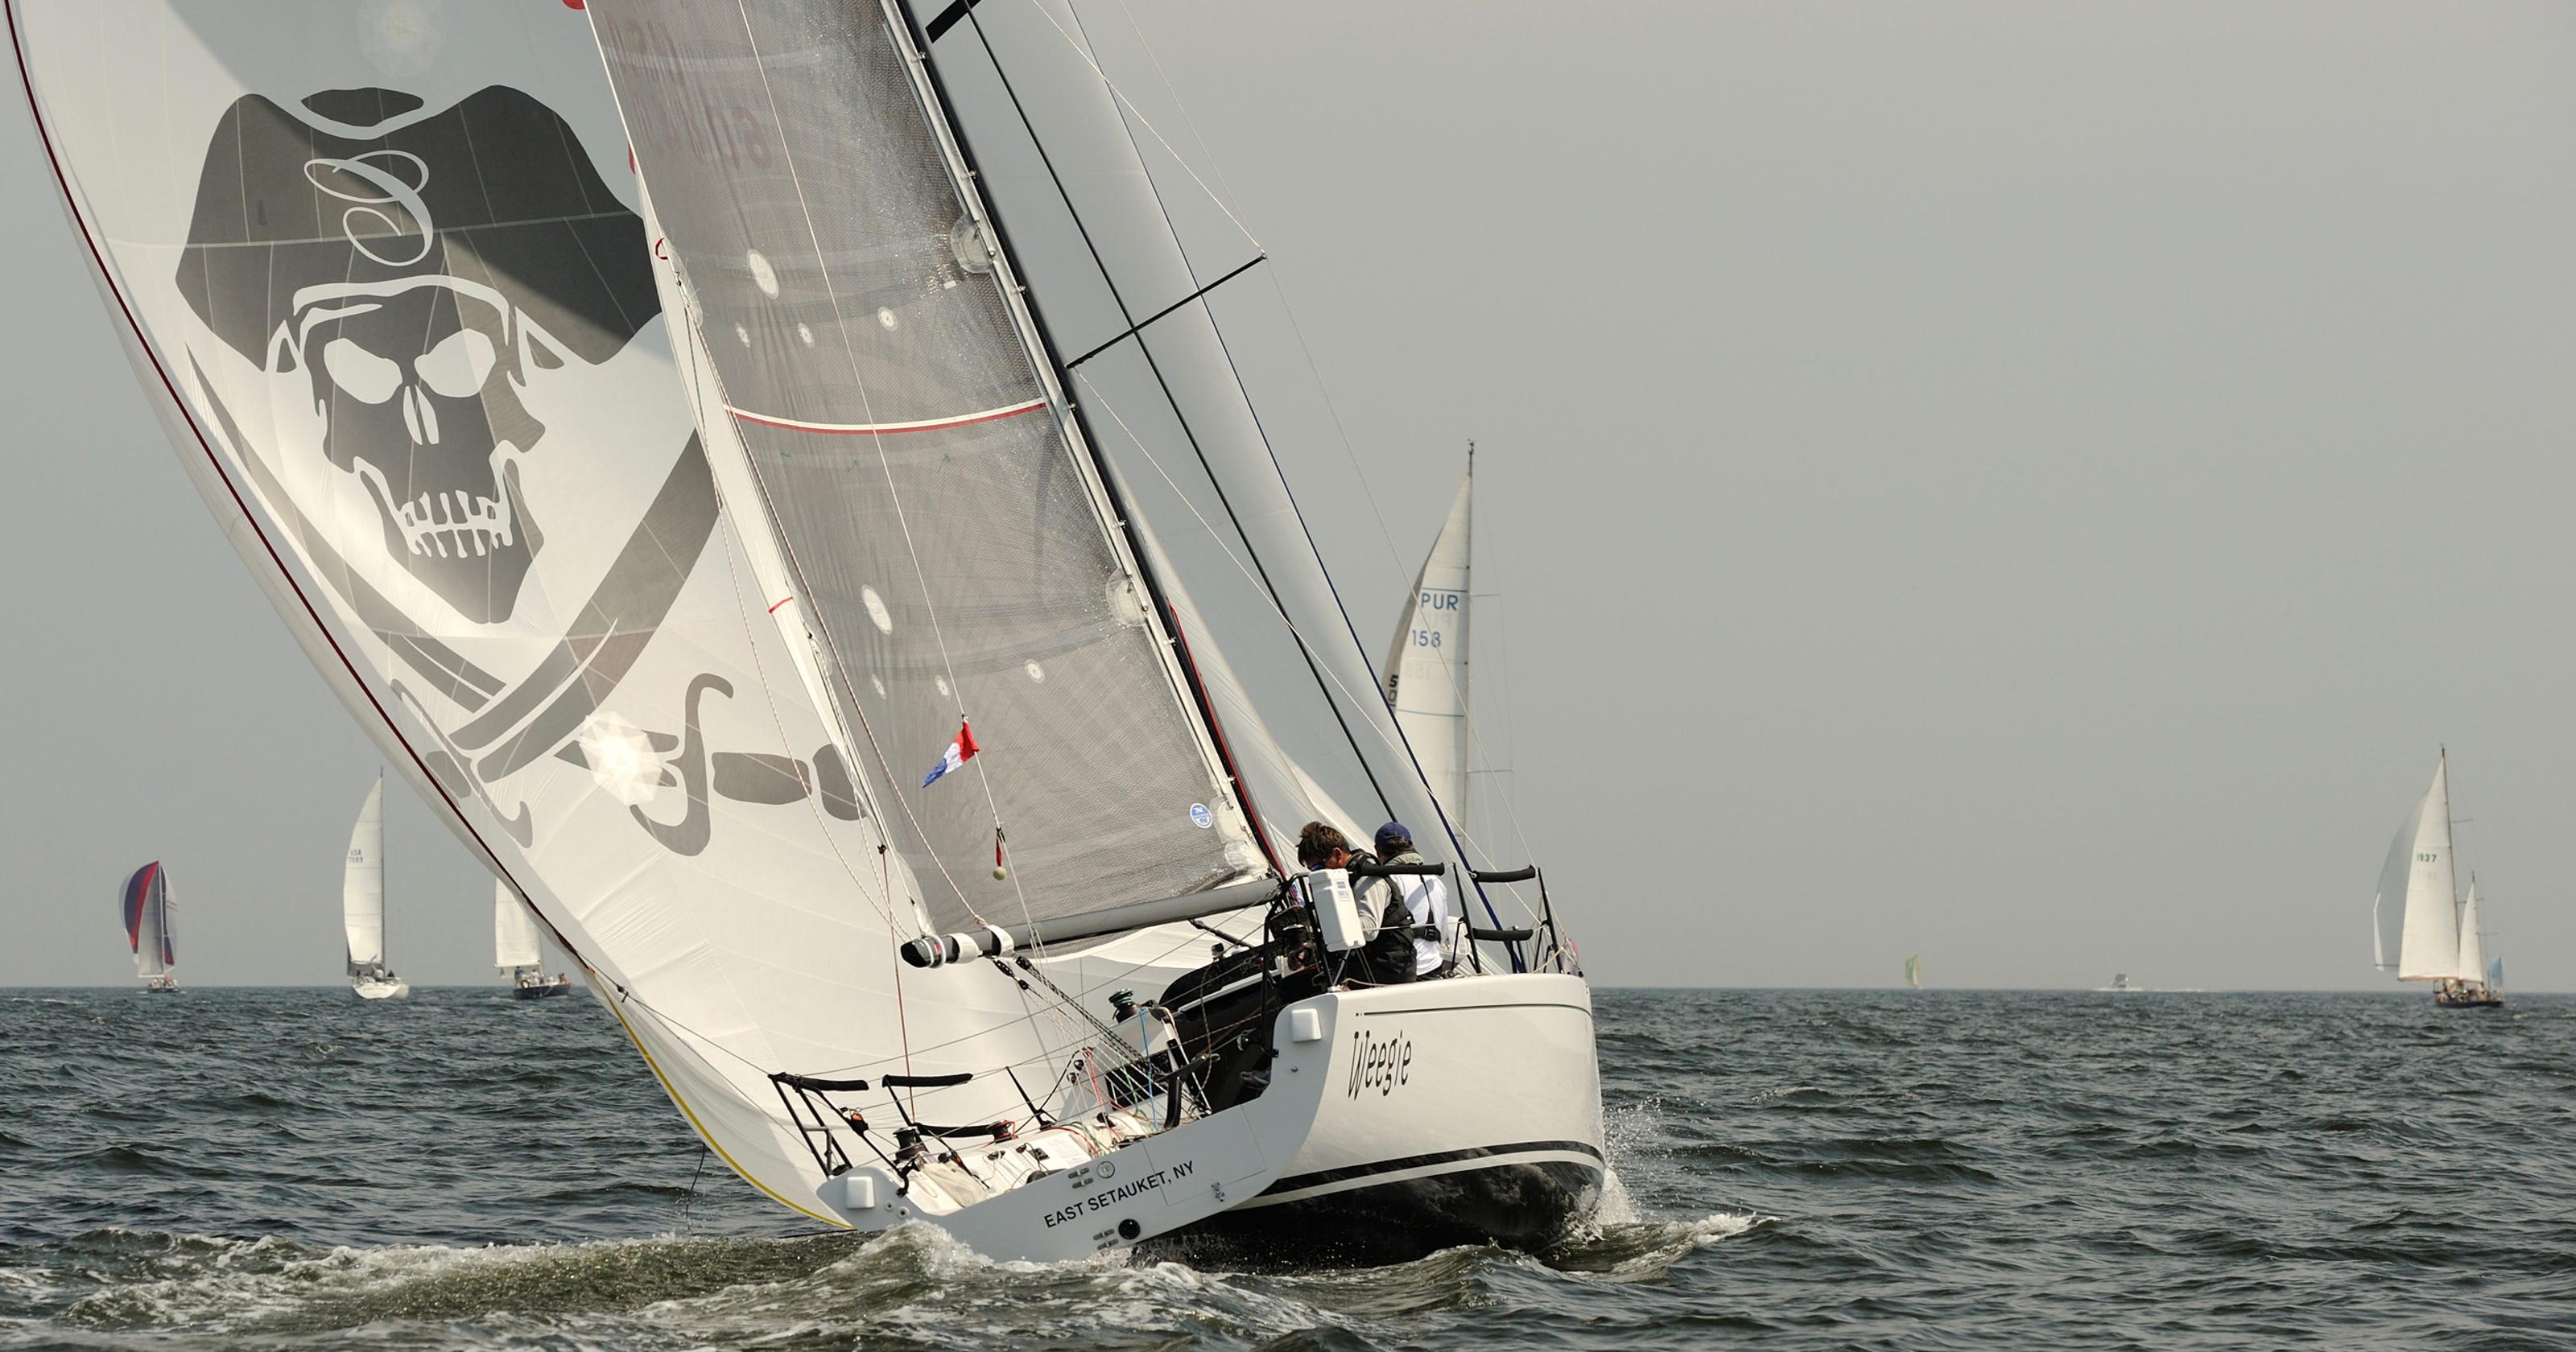 racing sailboats for sale usa